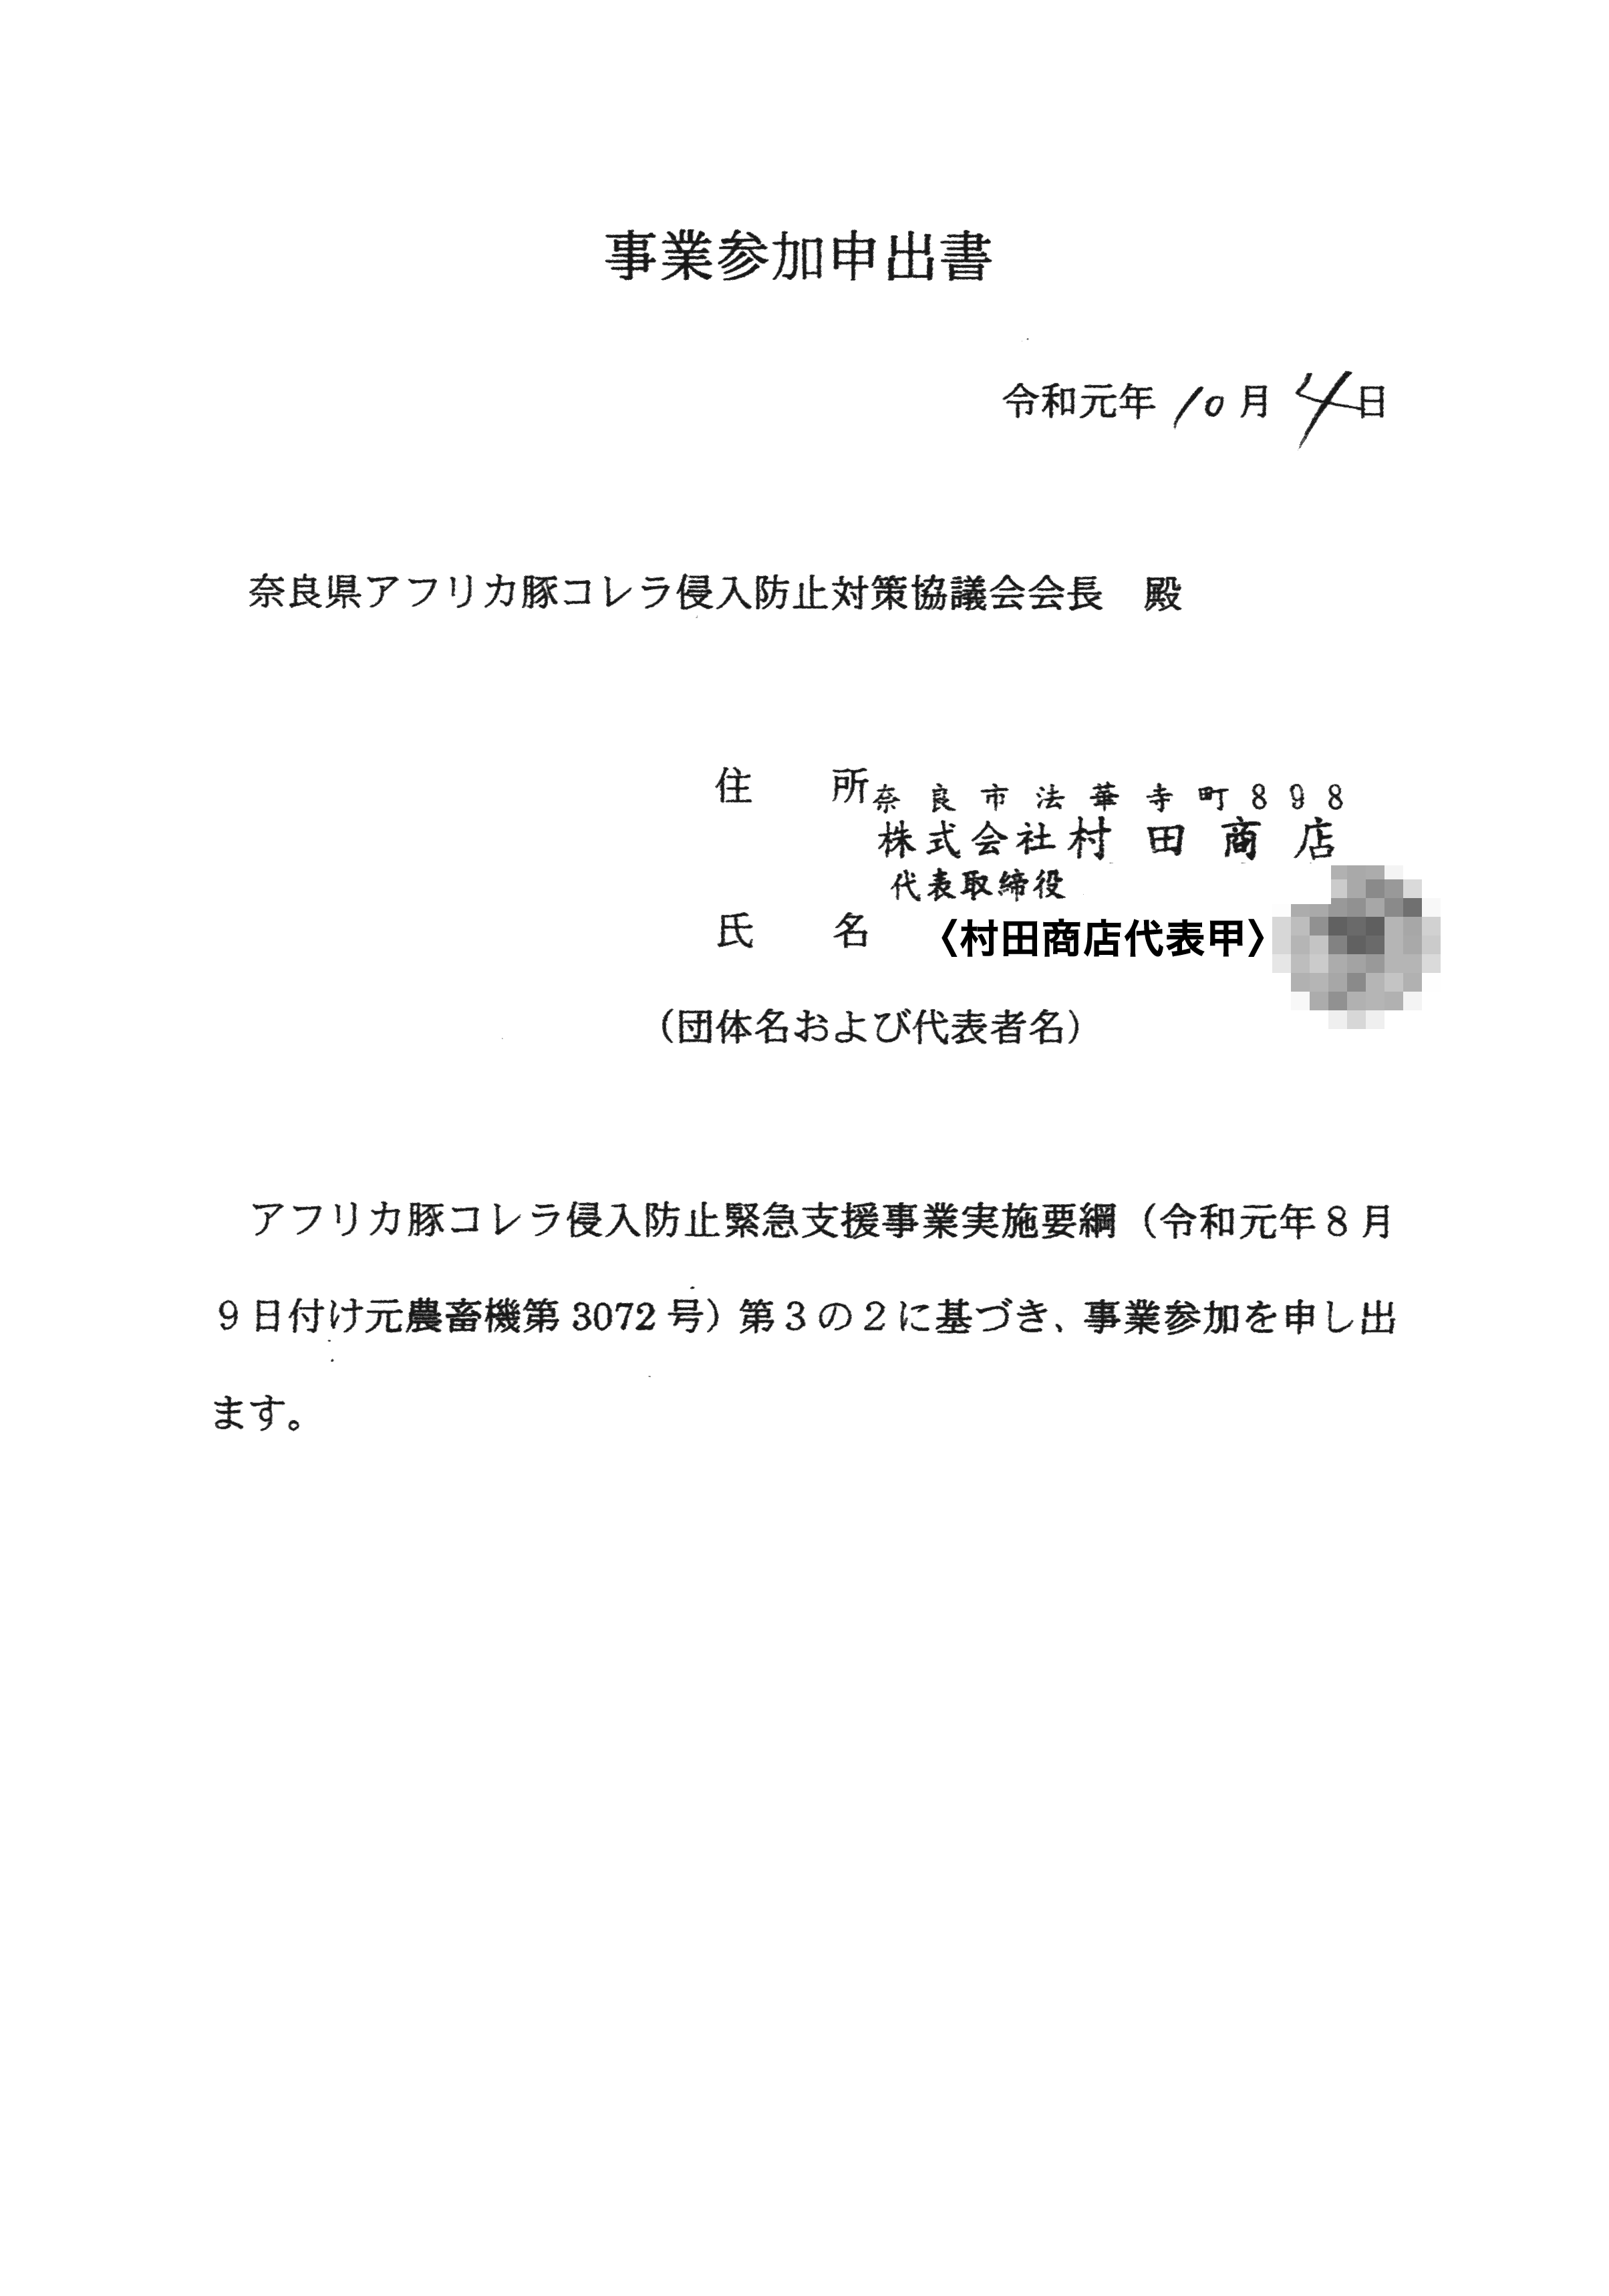 令和1年10月7日-村田商店からの柵設置に関する通知（長尾2地権者宛・10-09消印）-09